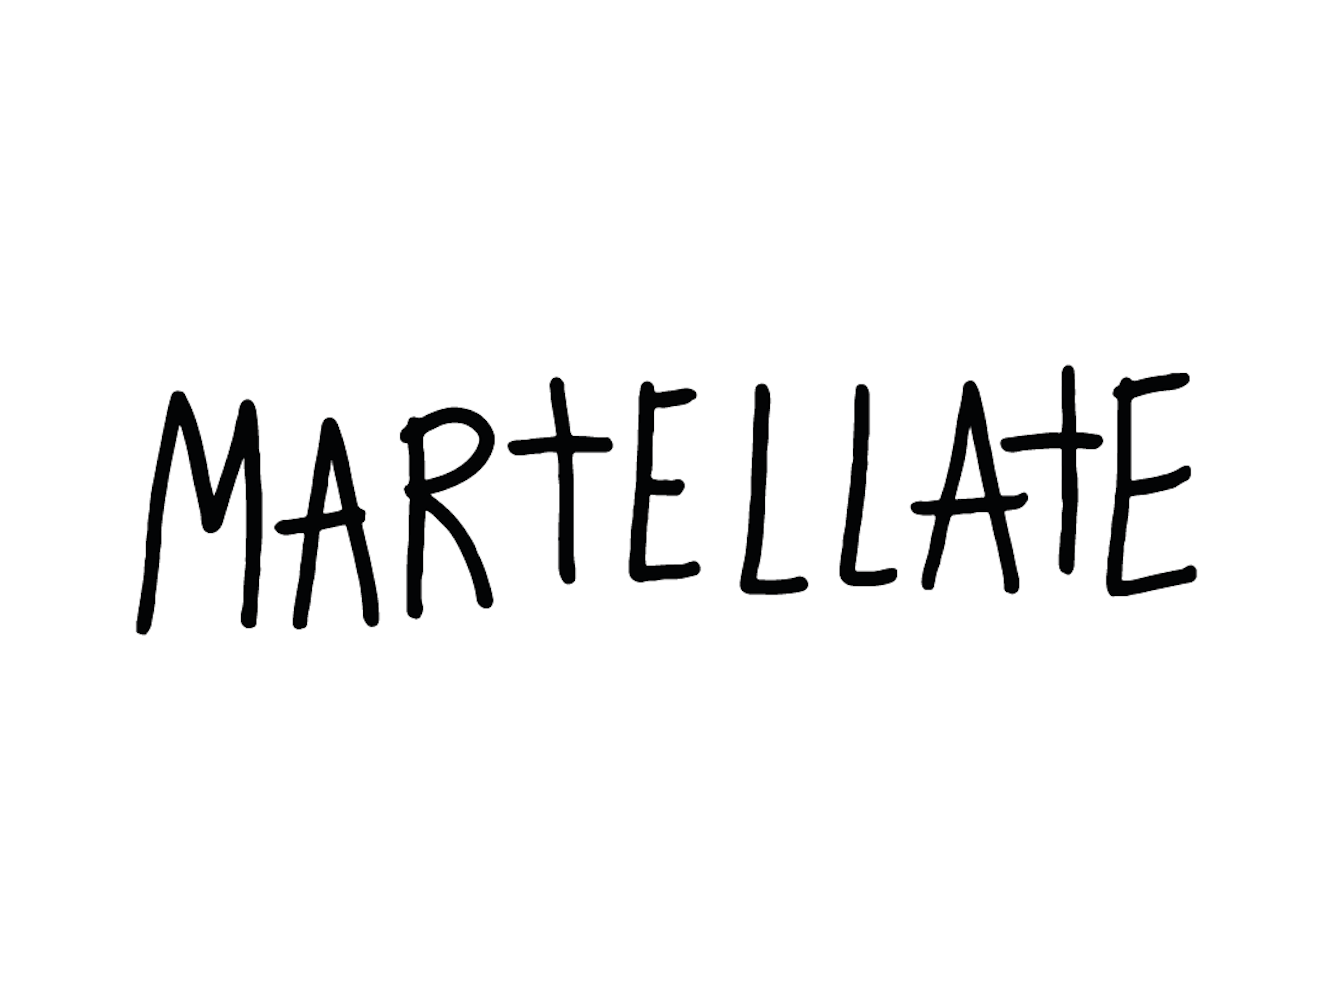 Marcello Maloberti, "MARTELLATE"